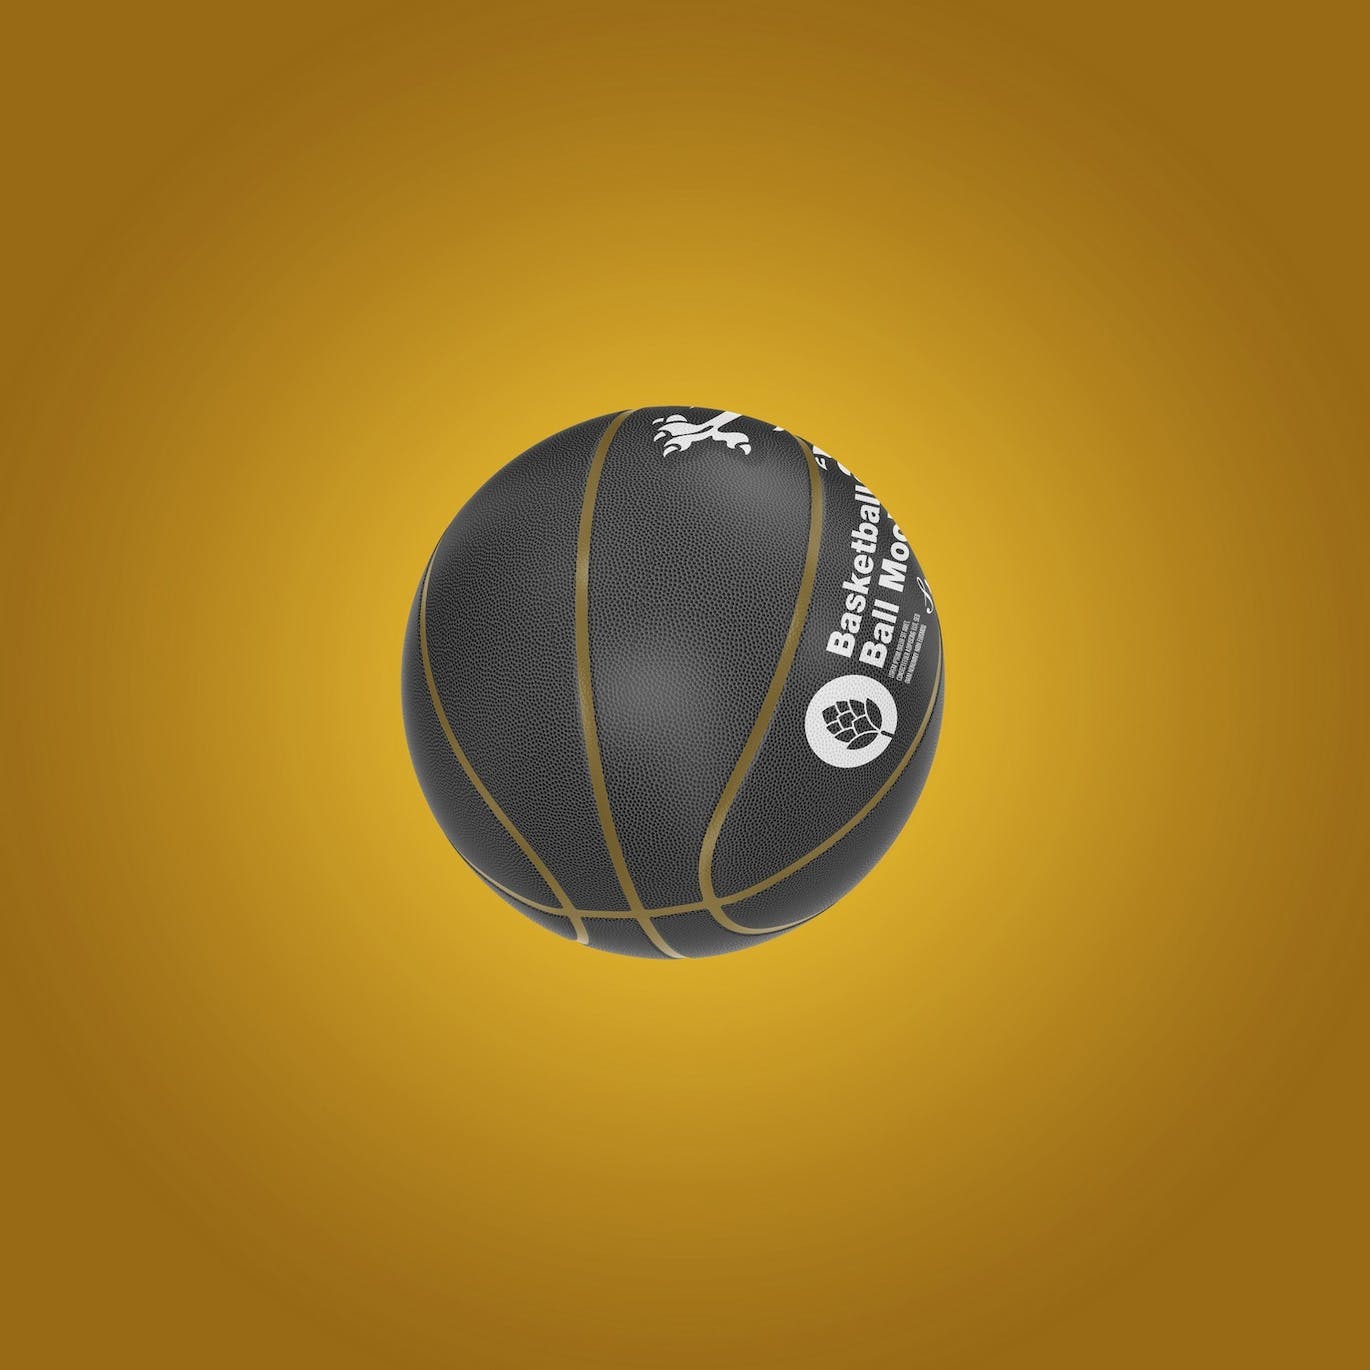 篮球运动品牌设计样机 Basketball Ball Mockup 样机素材 第15张